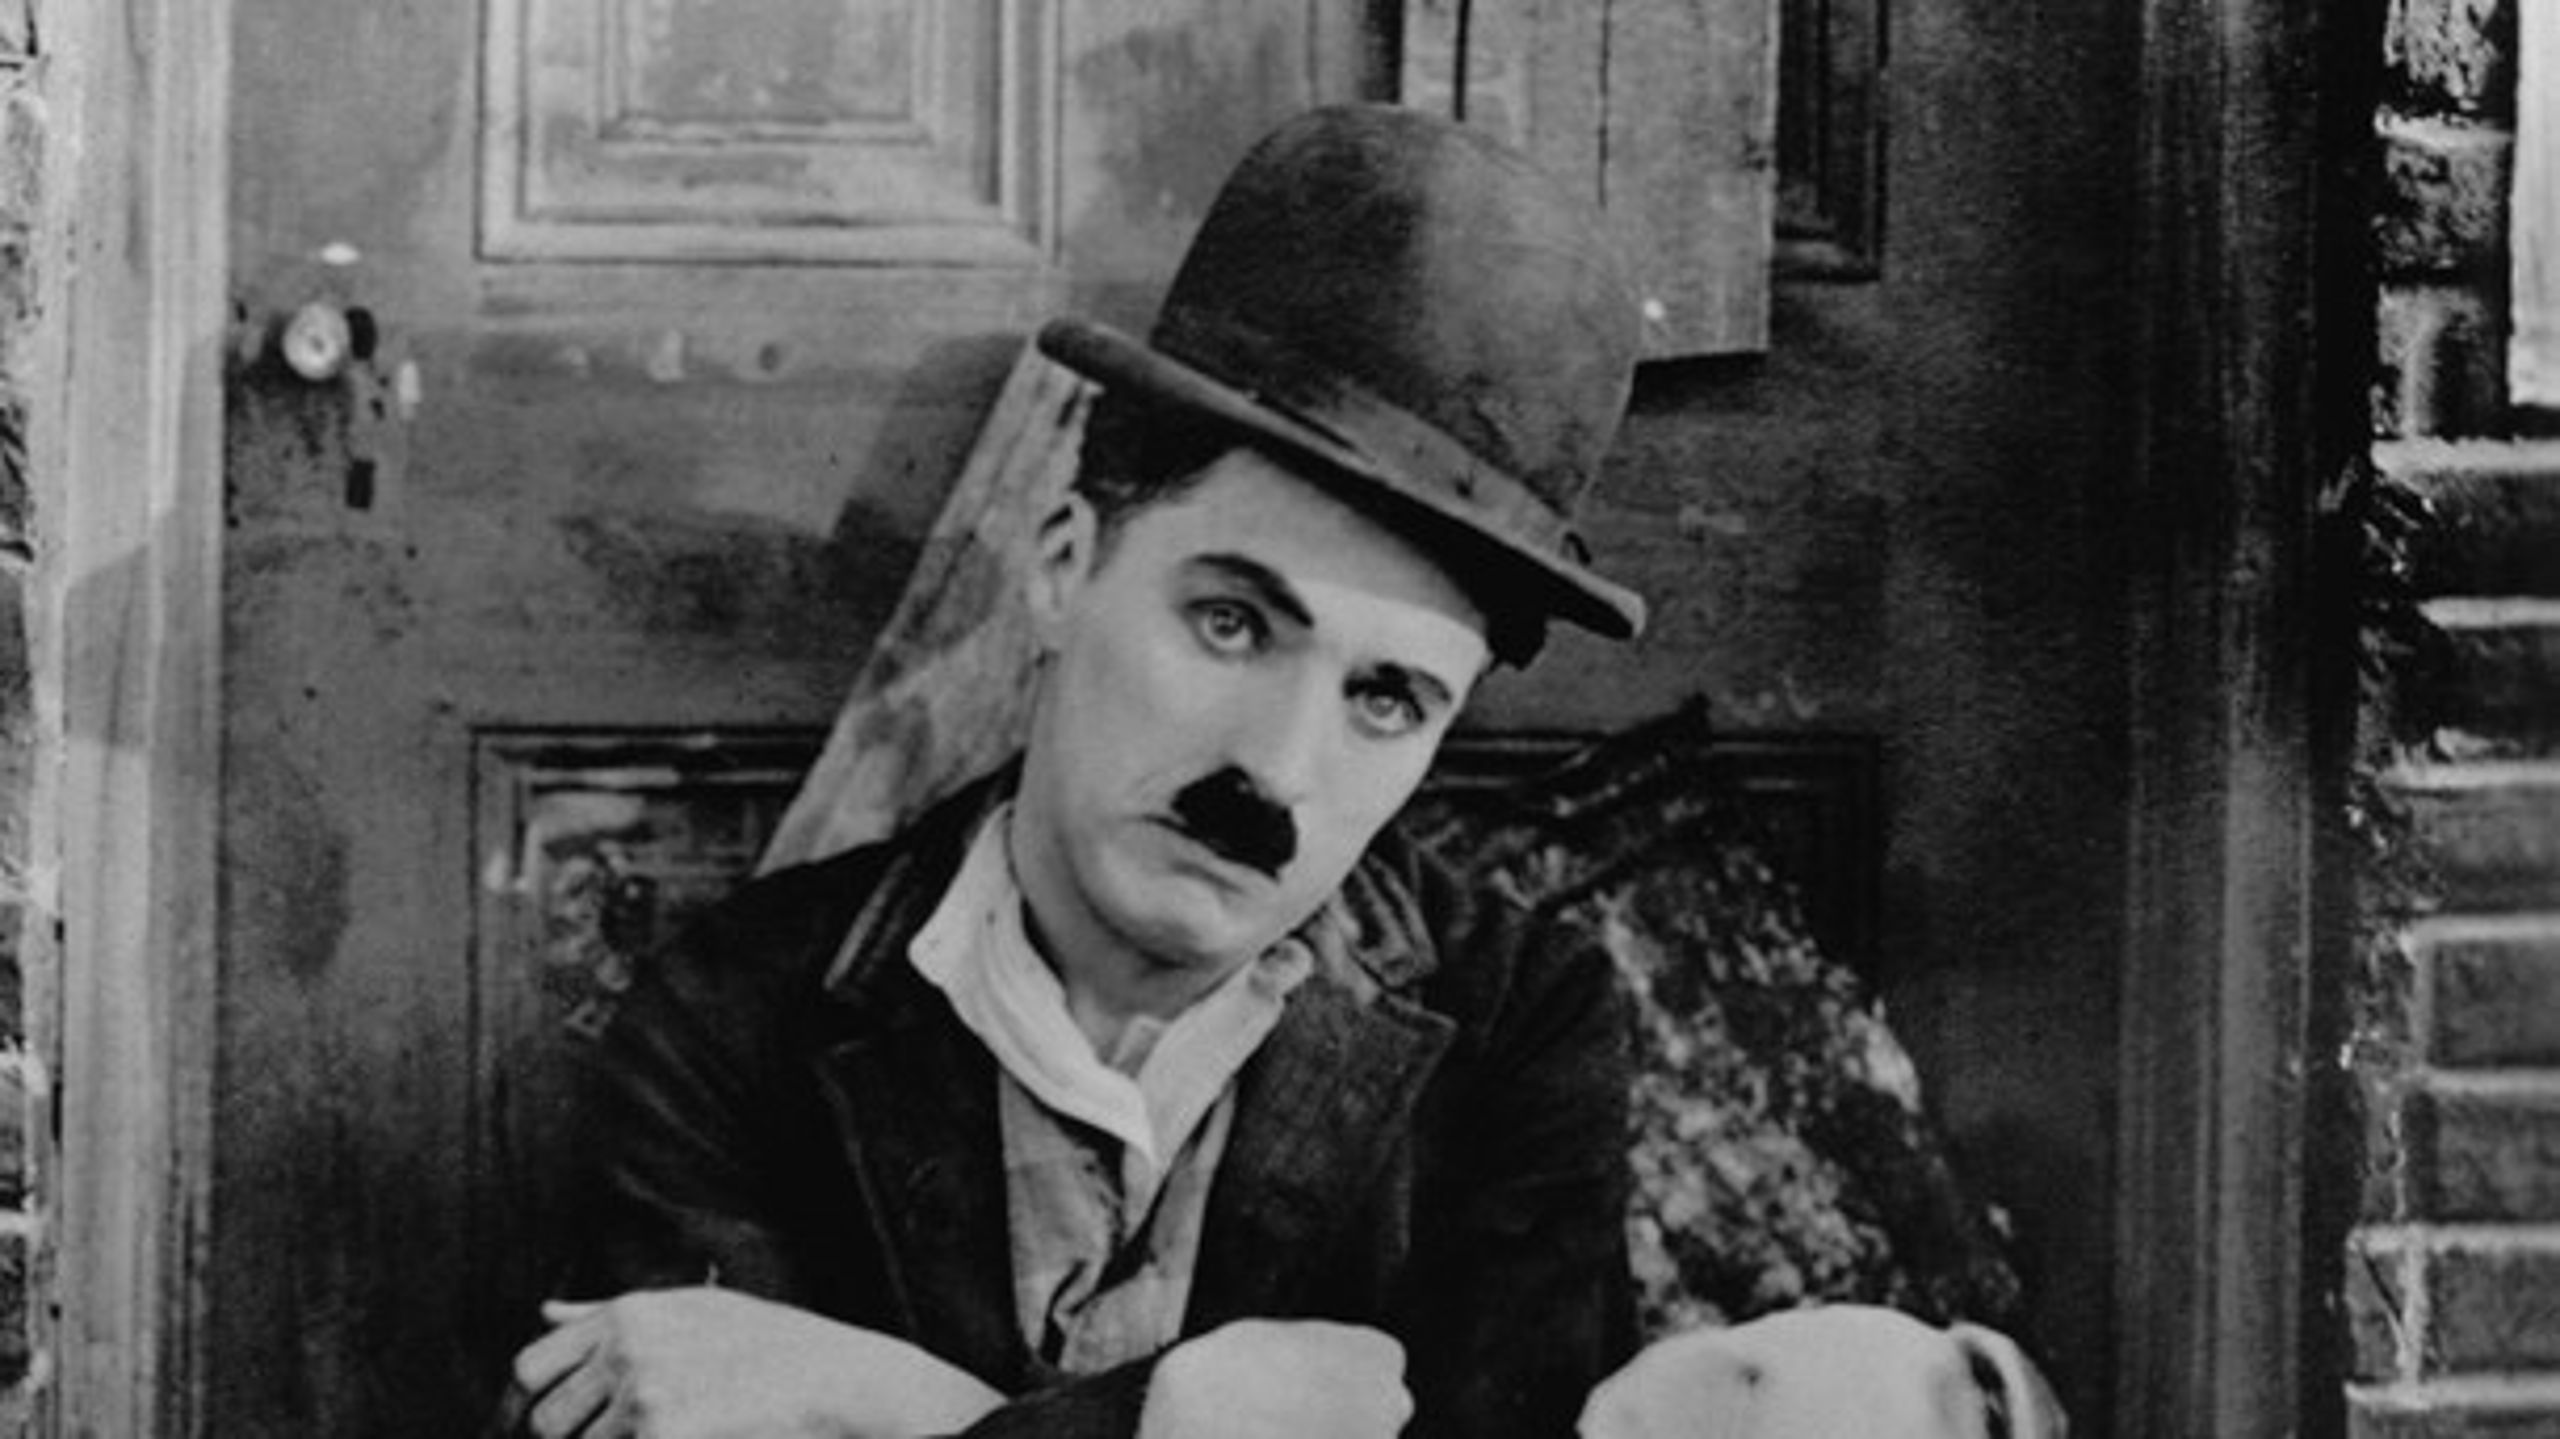 &nbsp;I sine komedier talte Charlie Chaplin ofte om ulykkelig kærlighed men også om vilkårene for uorganiserede arbejdere, hjemløse og livet på gaden i det hele taget. Her 'A Dog's Life' fra 1918.